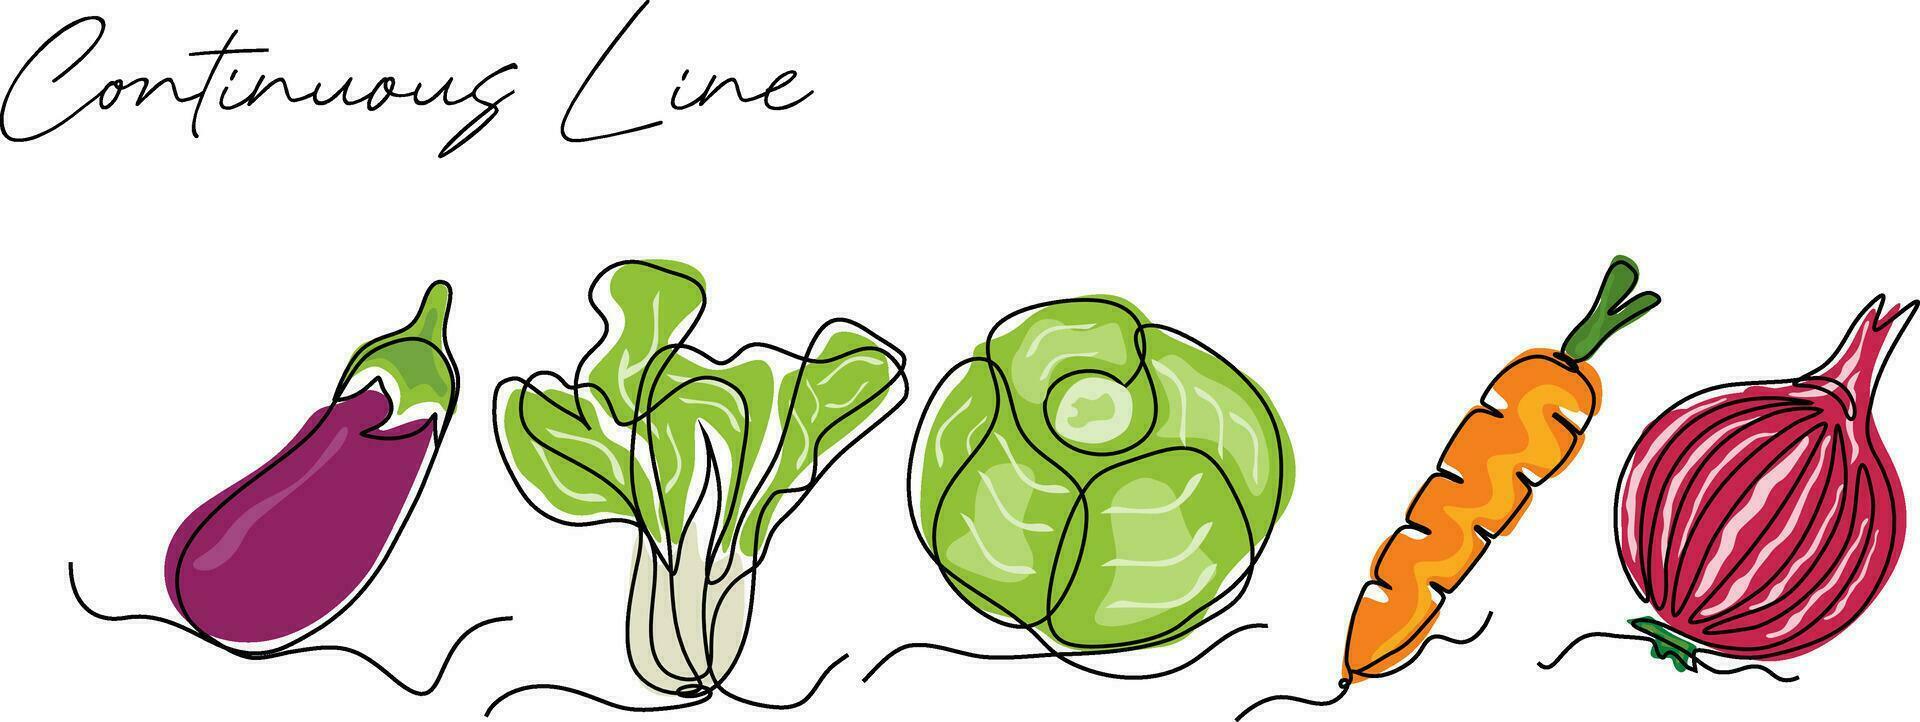 fresco legumes contínuo linha desenhando conjunto vetor